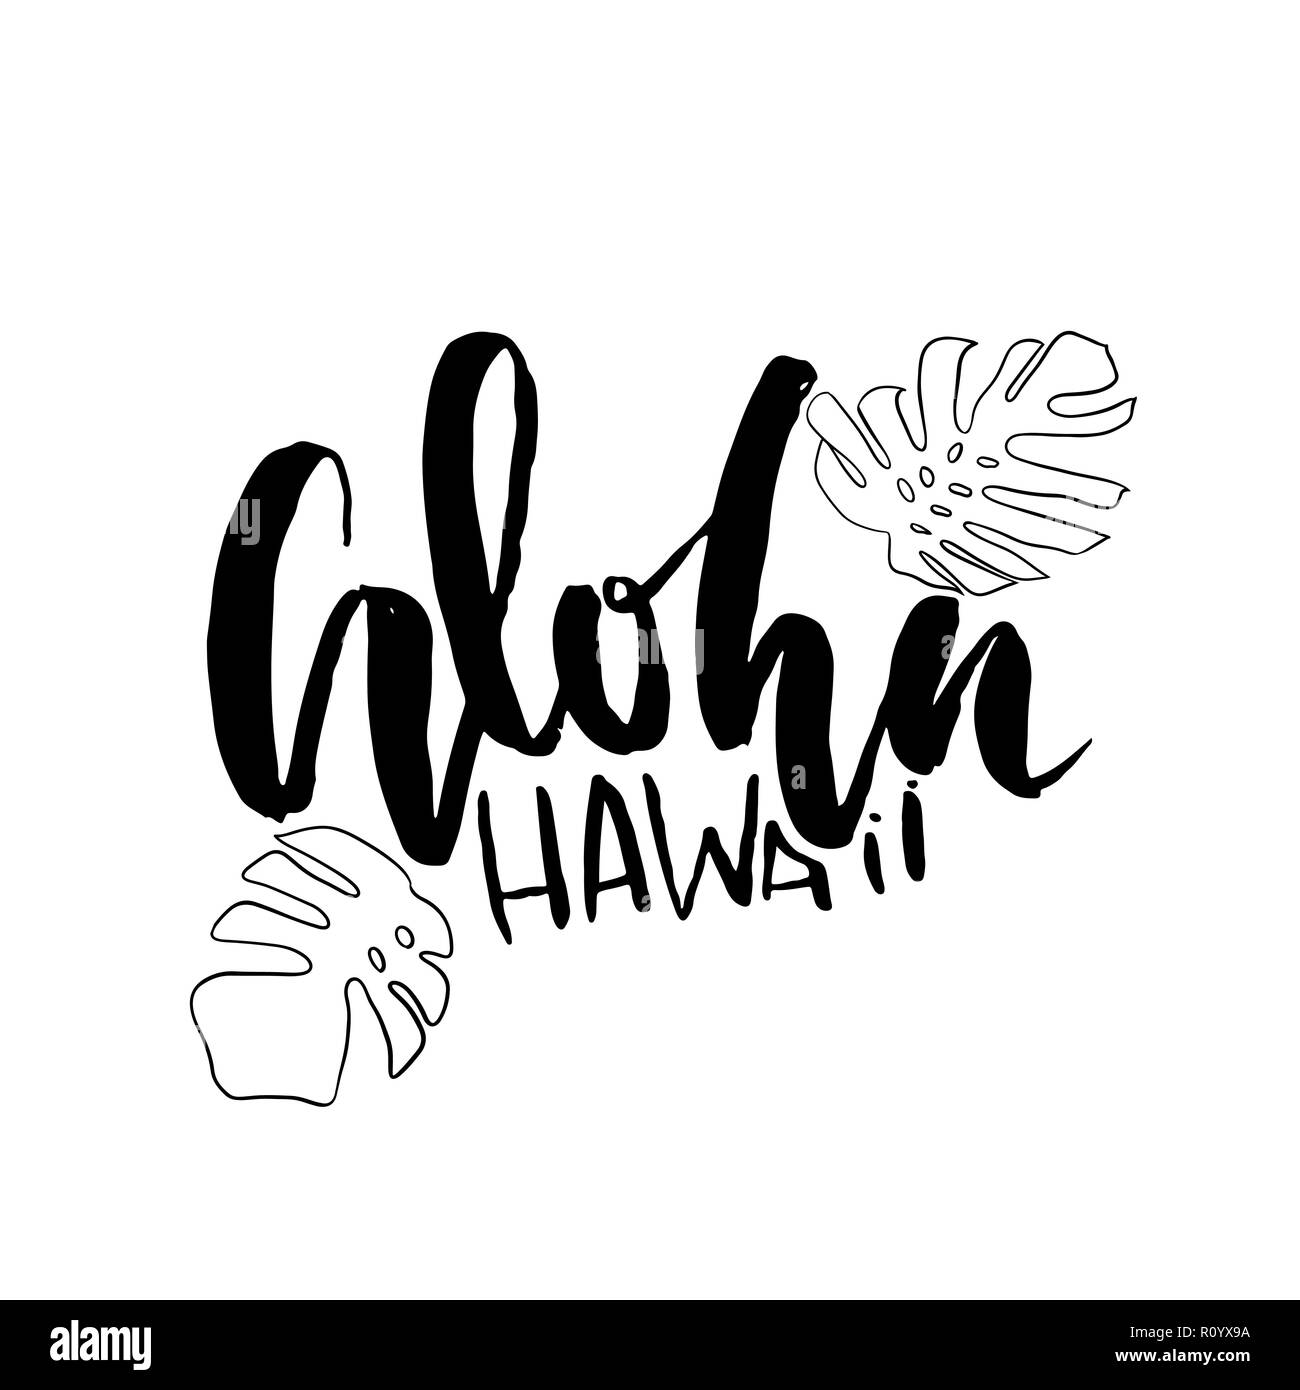 Aloha Hawaii. Modern brush lettering design. Vector monstera leaves illustration. Stock Vector